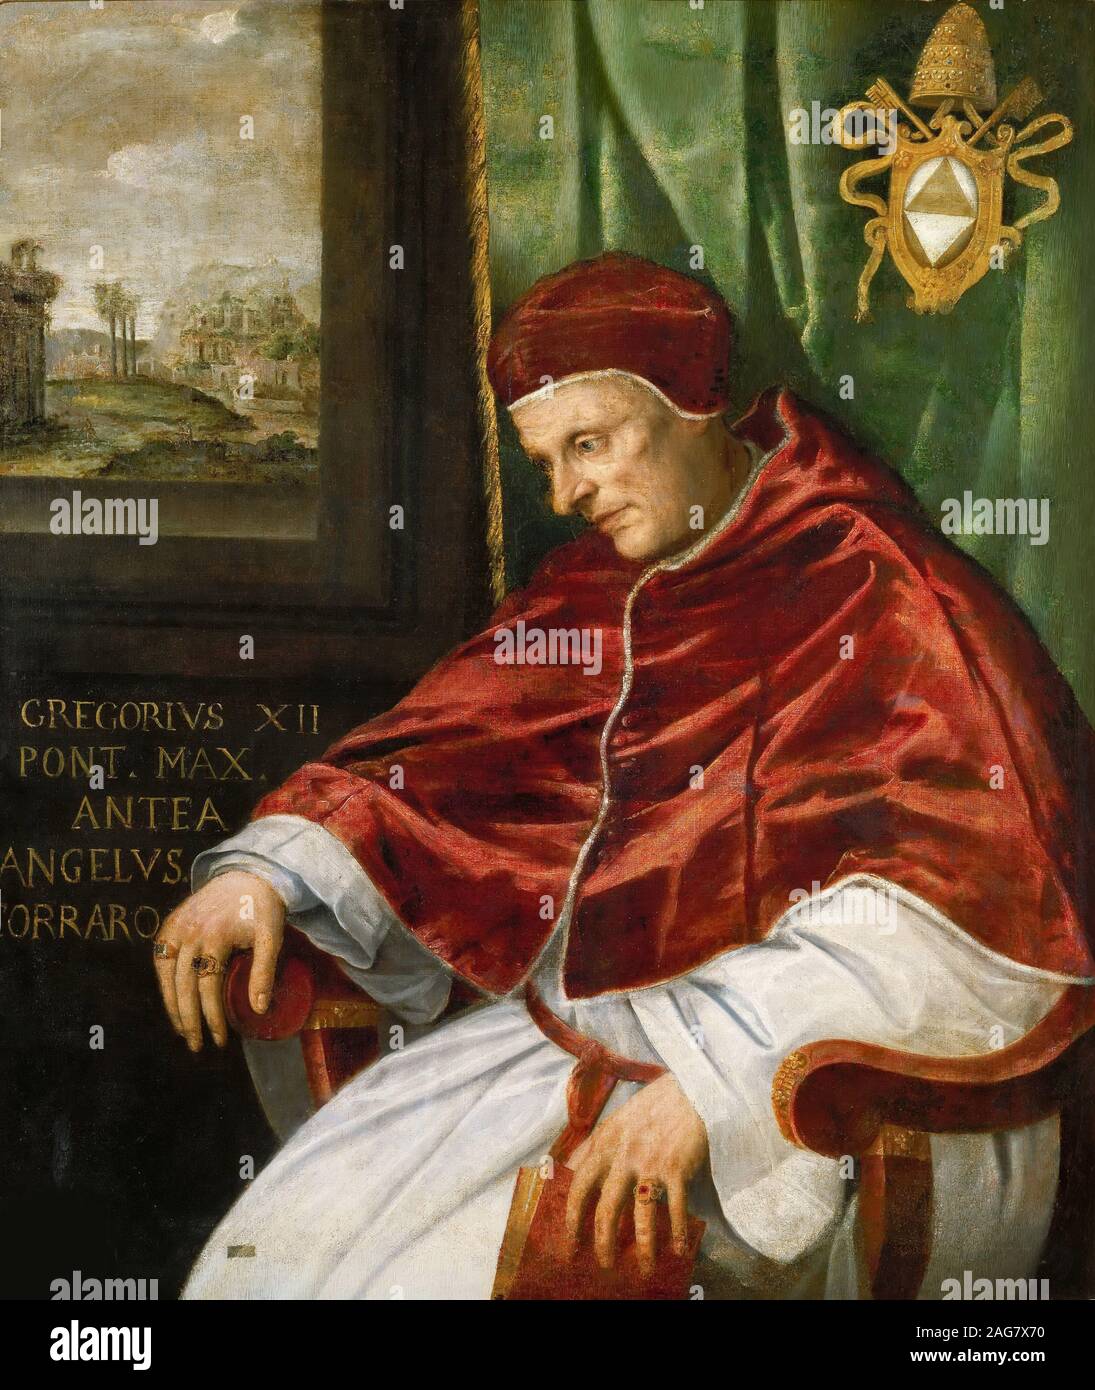 Ritratto di papa Gregorio XII. Trova nella collezione dei Musei Vaticani in Viale Vaticano, Roma. Foto Stock